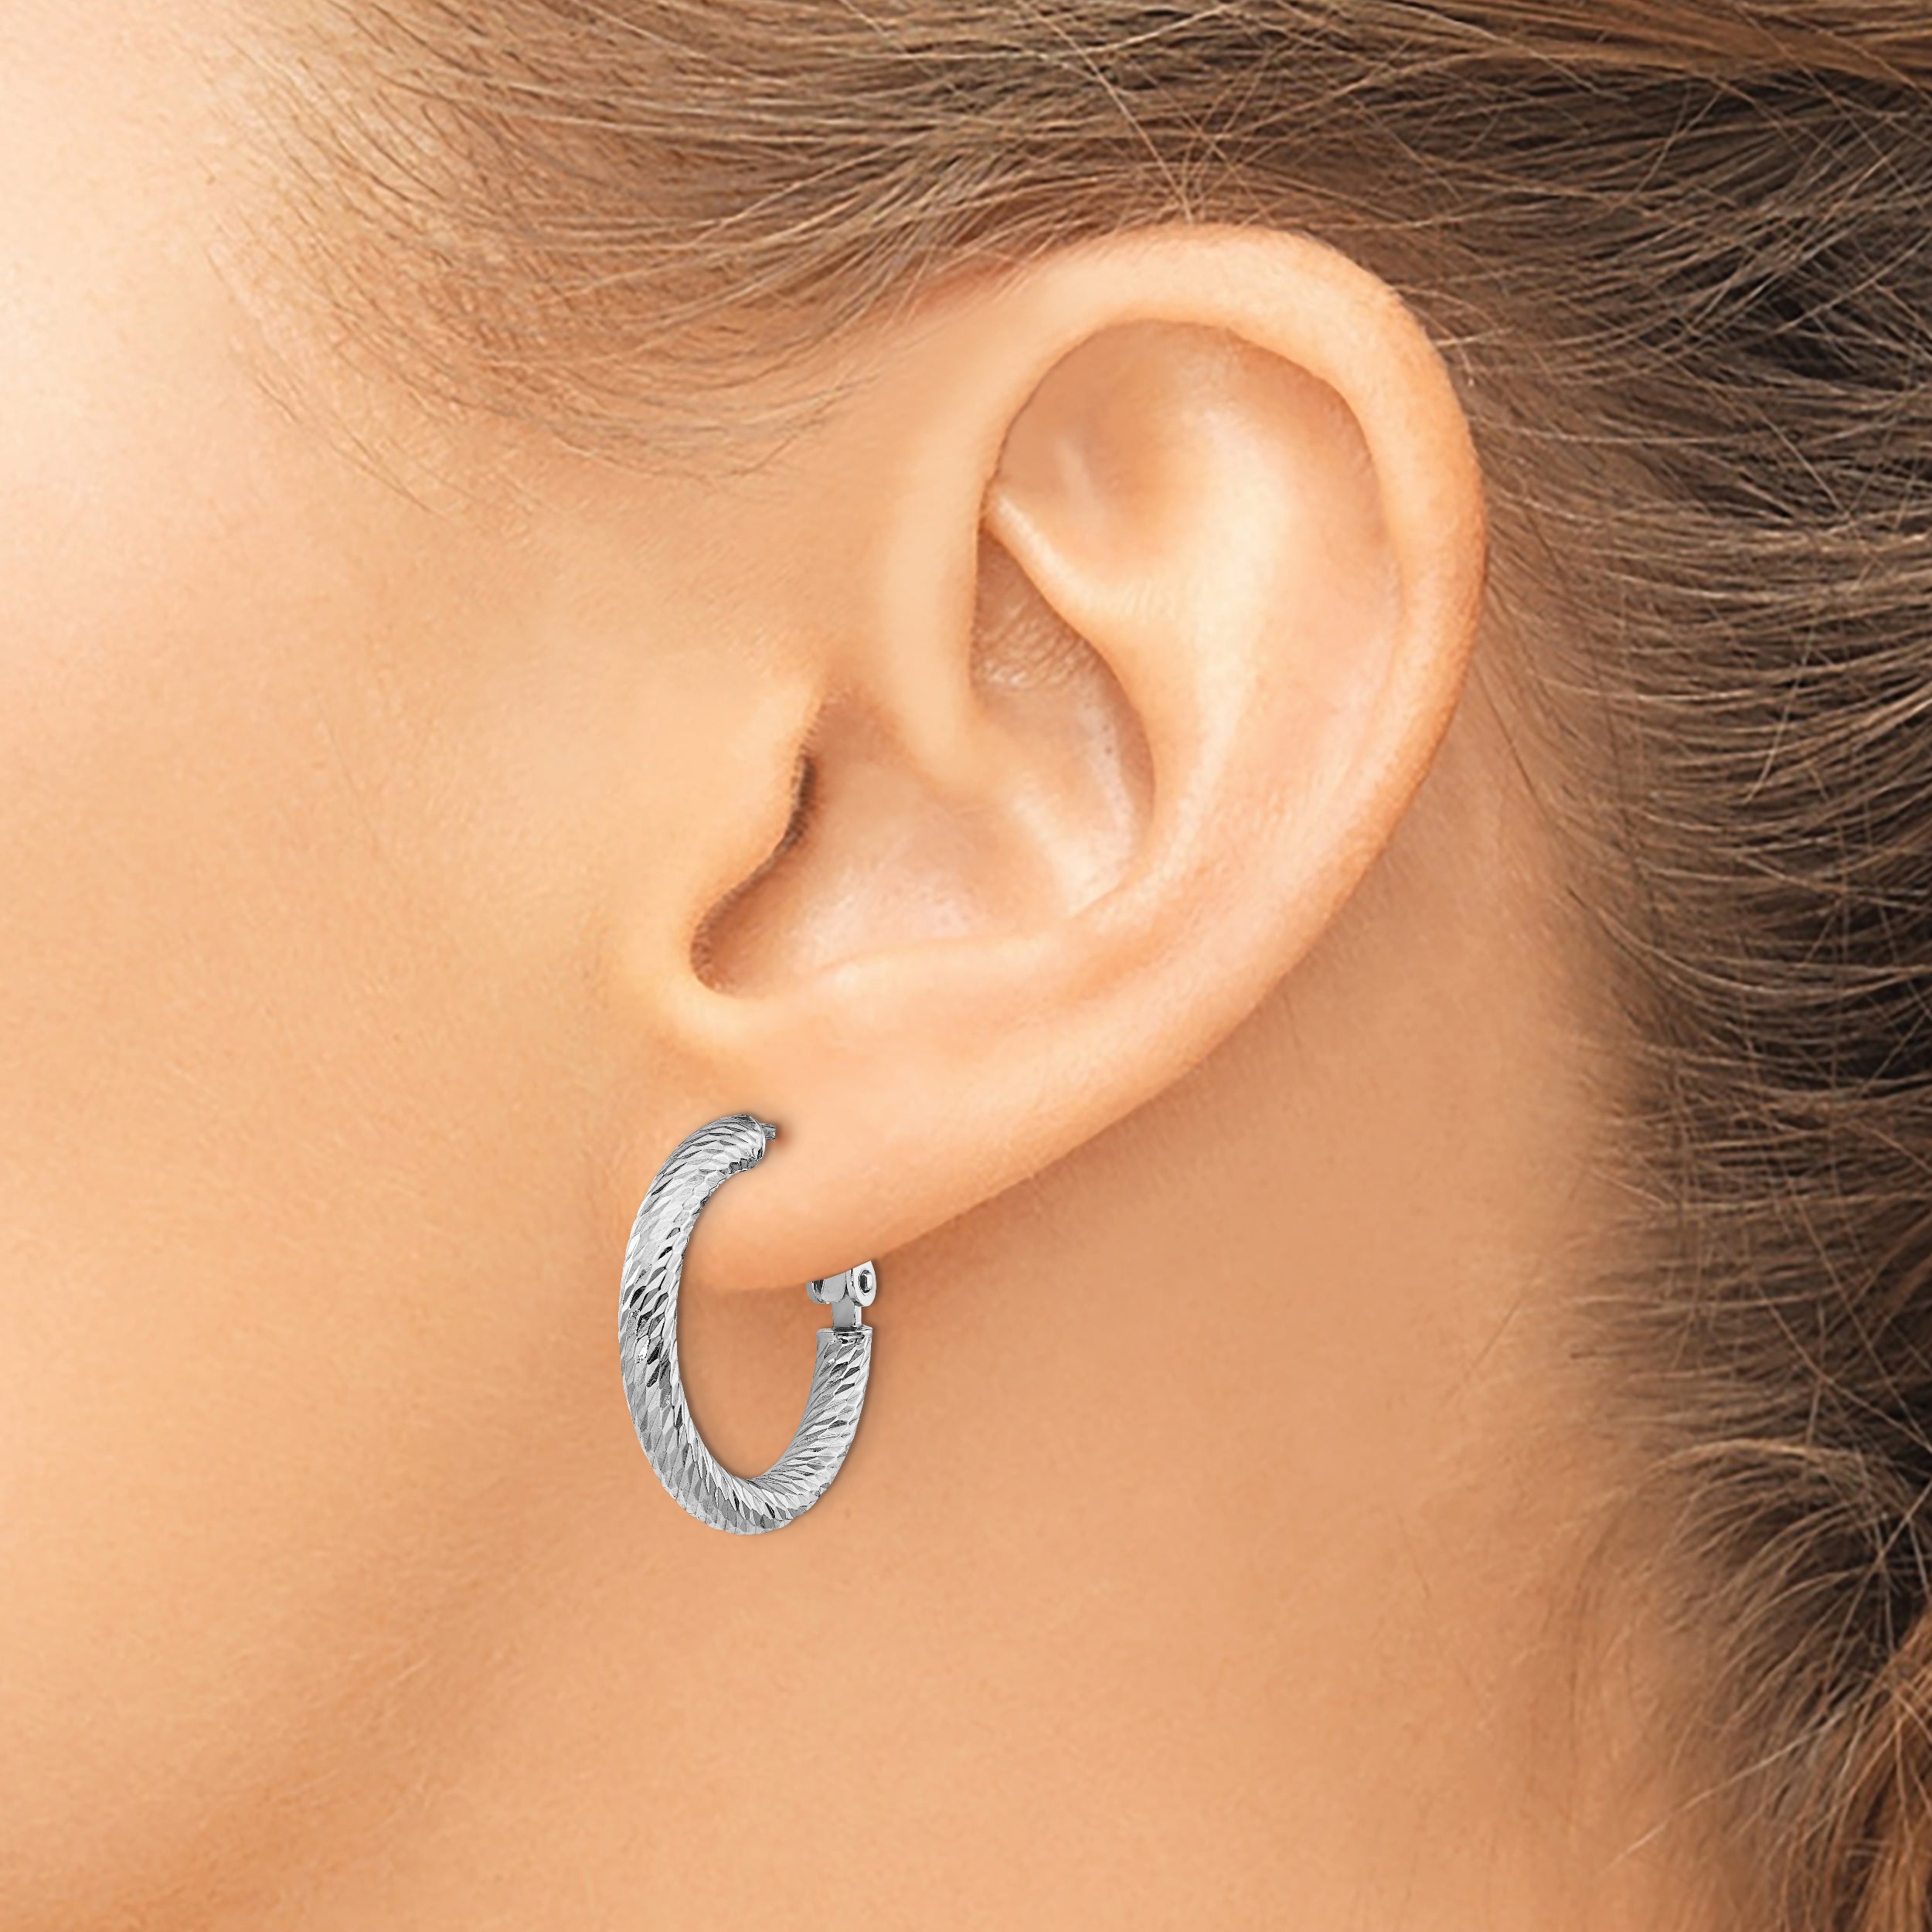 14k 3x15mm White Gold Diamond-cut Round Omega Back Hoop Earrings